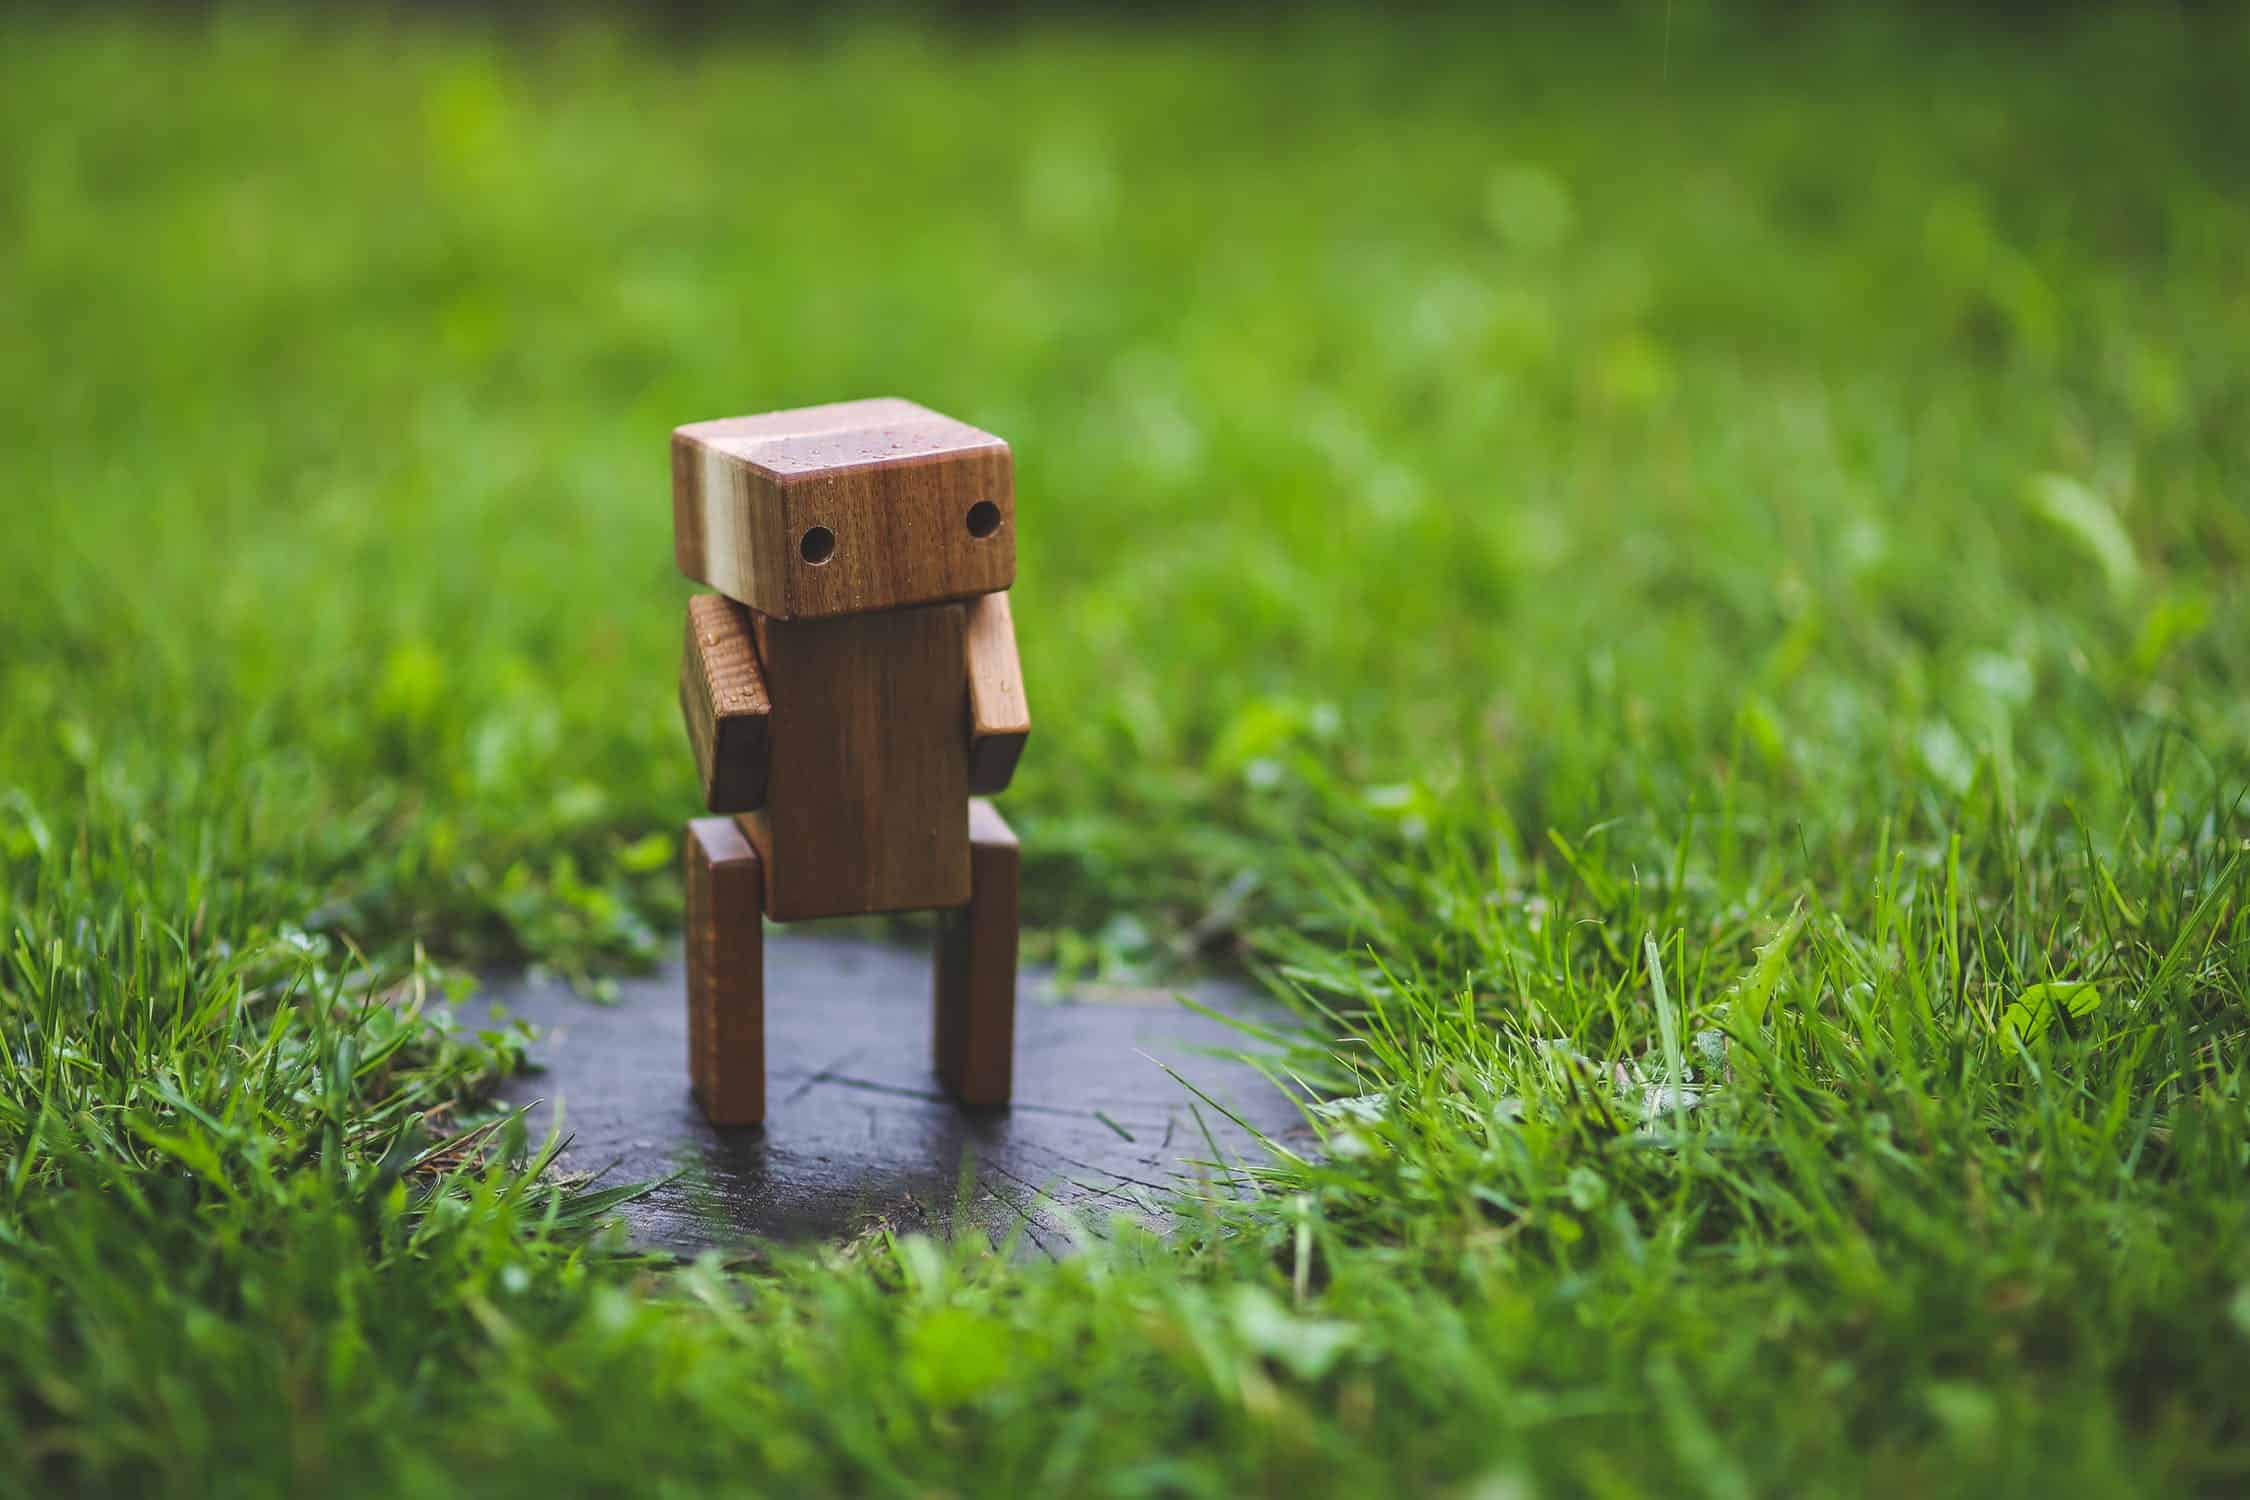 A Wooden Robot Resembling A Chatbota